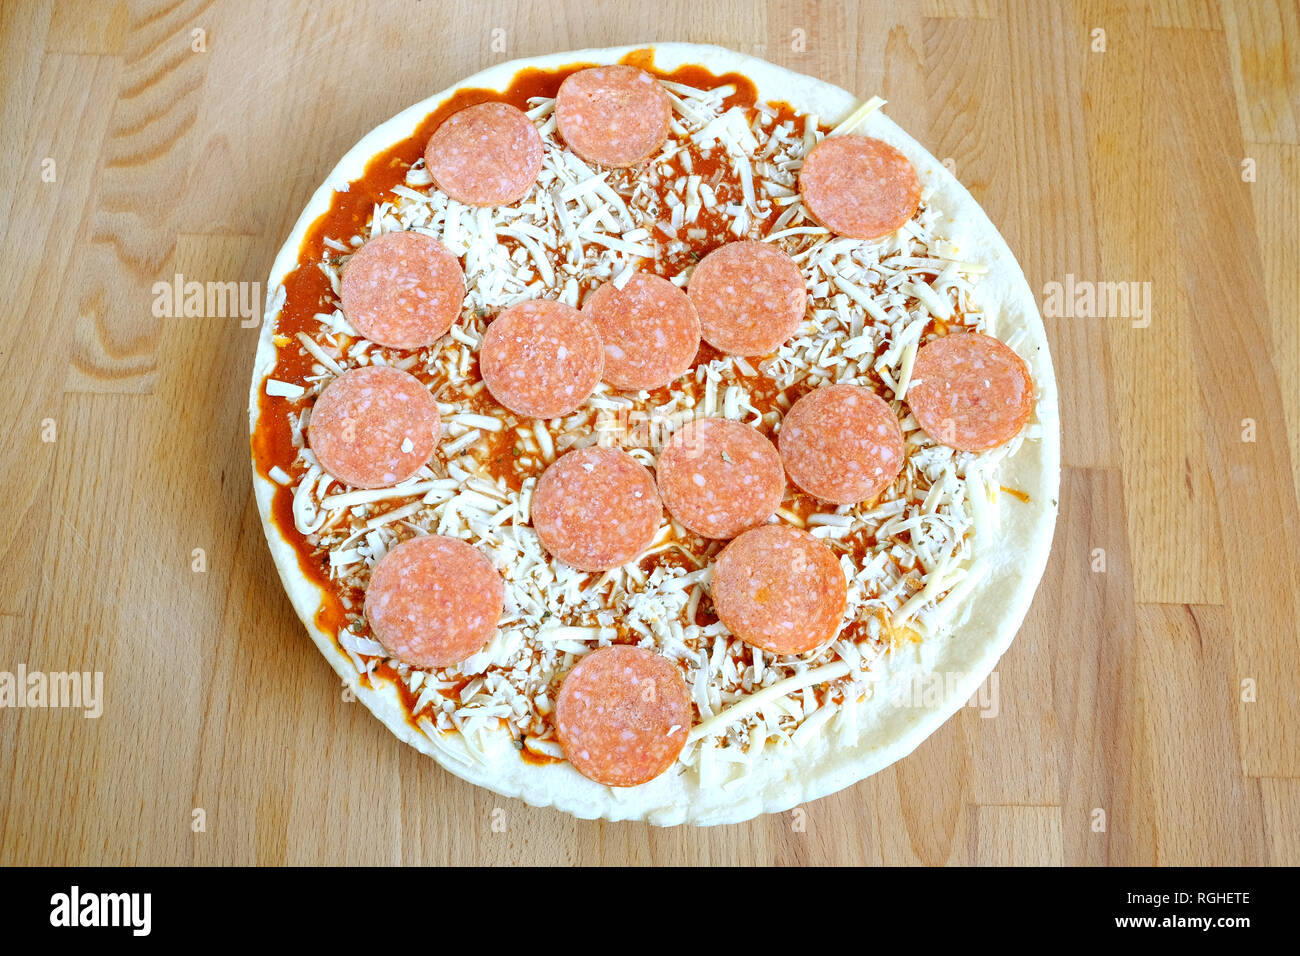 Materie (nella quasi totalità) impreparati pizza sul marrone sabbia cucina in legno table top view closeup Foto Stock